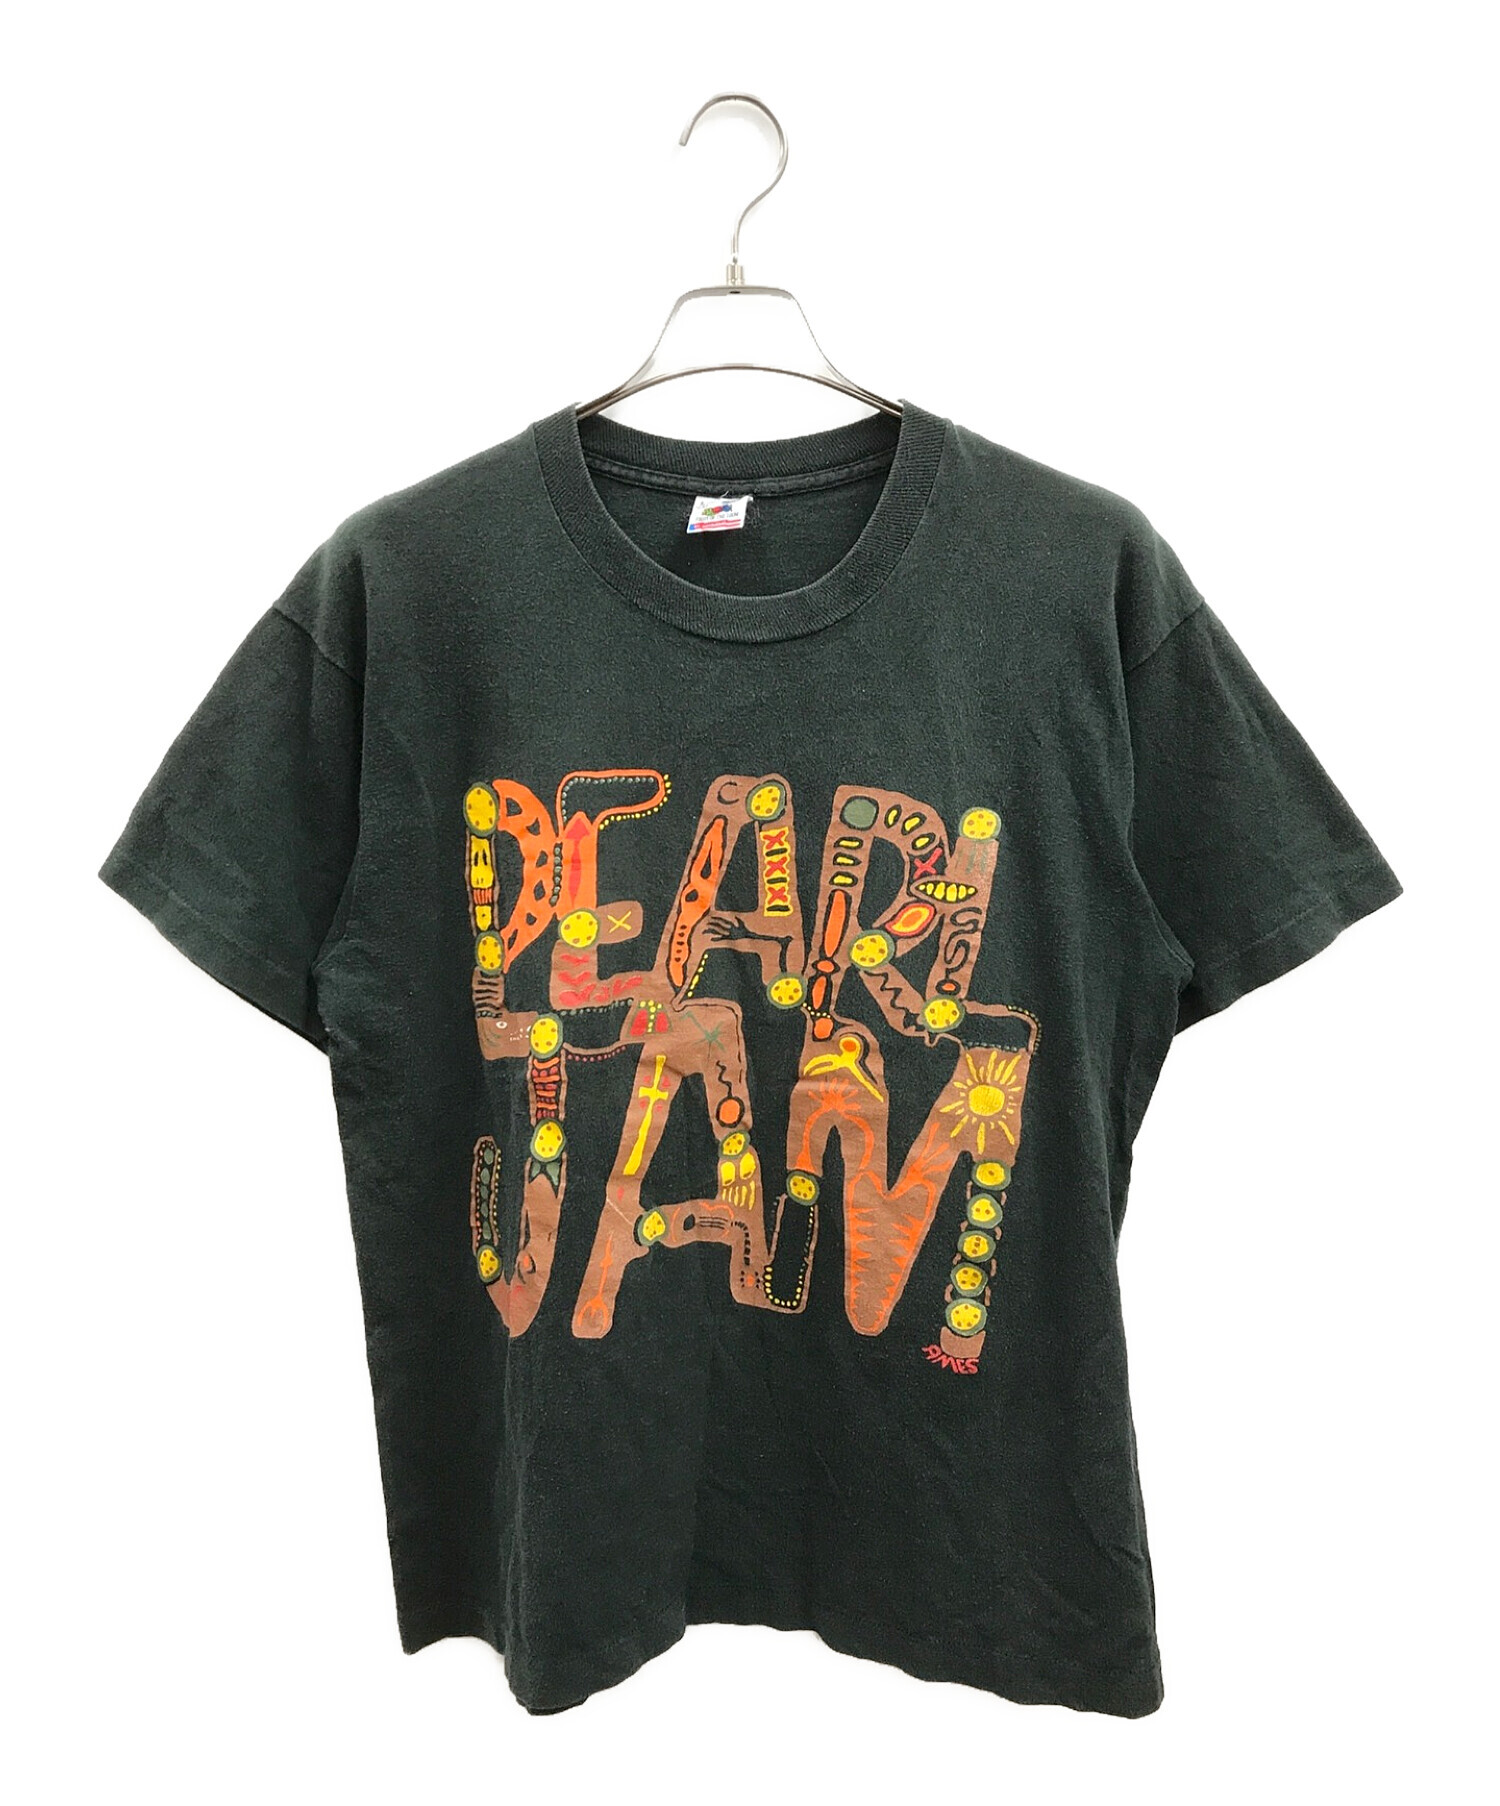 pearl jam (パール・ジャム) 90'SヴィンテージTシャツ ブラック サイズ:L